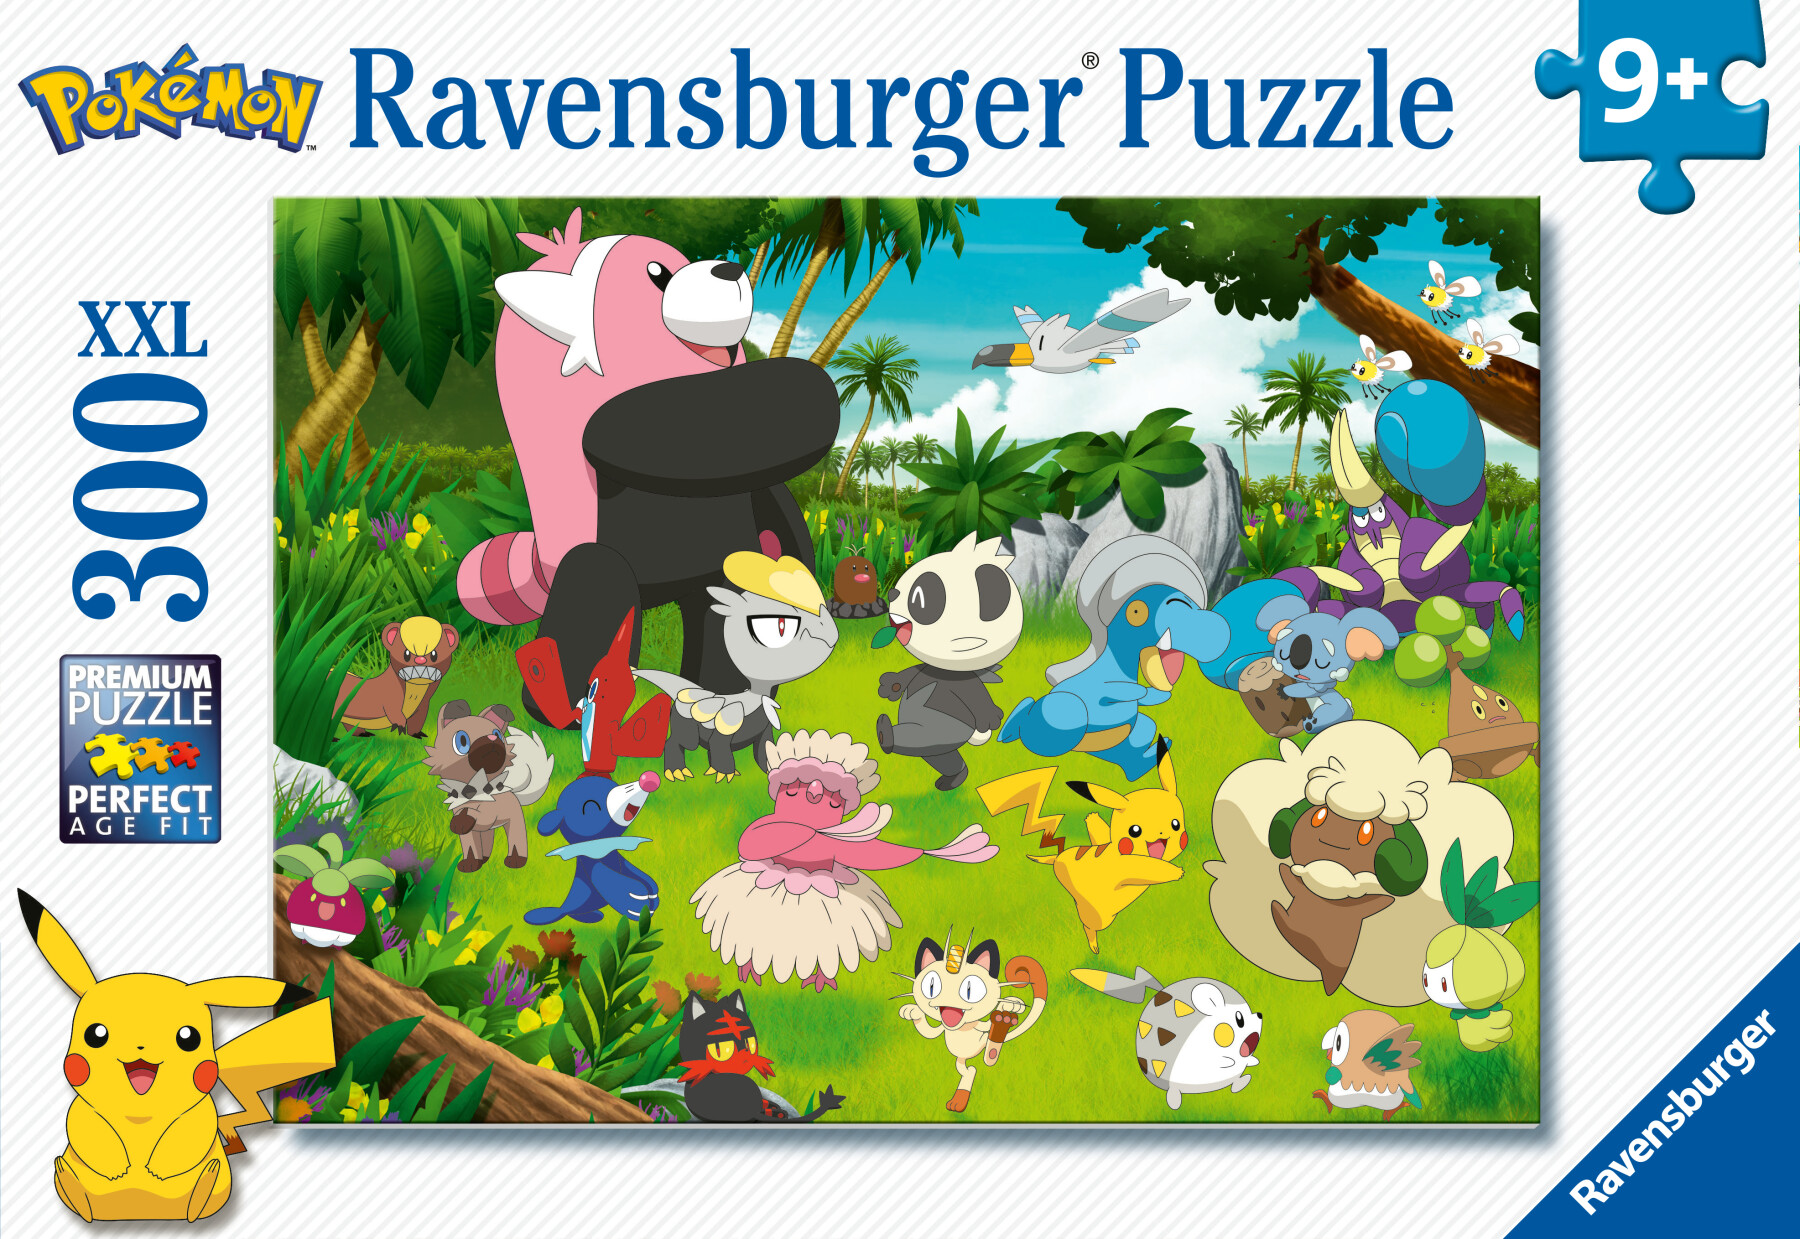 Ravensburger - puzzle pokémon, 300 pezzi xxl, età raccomandata 9+ anni - POKEMON, RAVENSBURGER